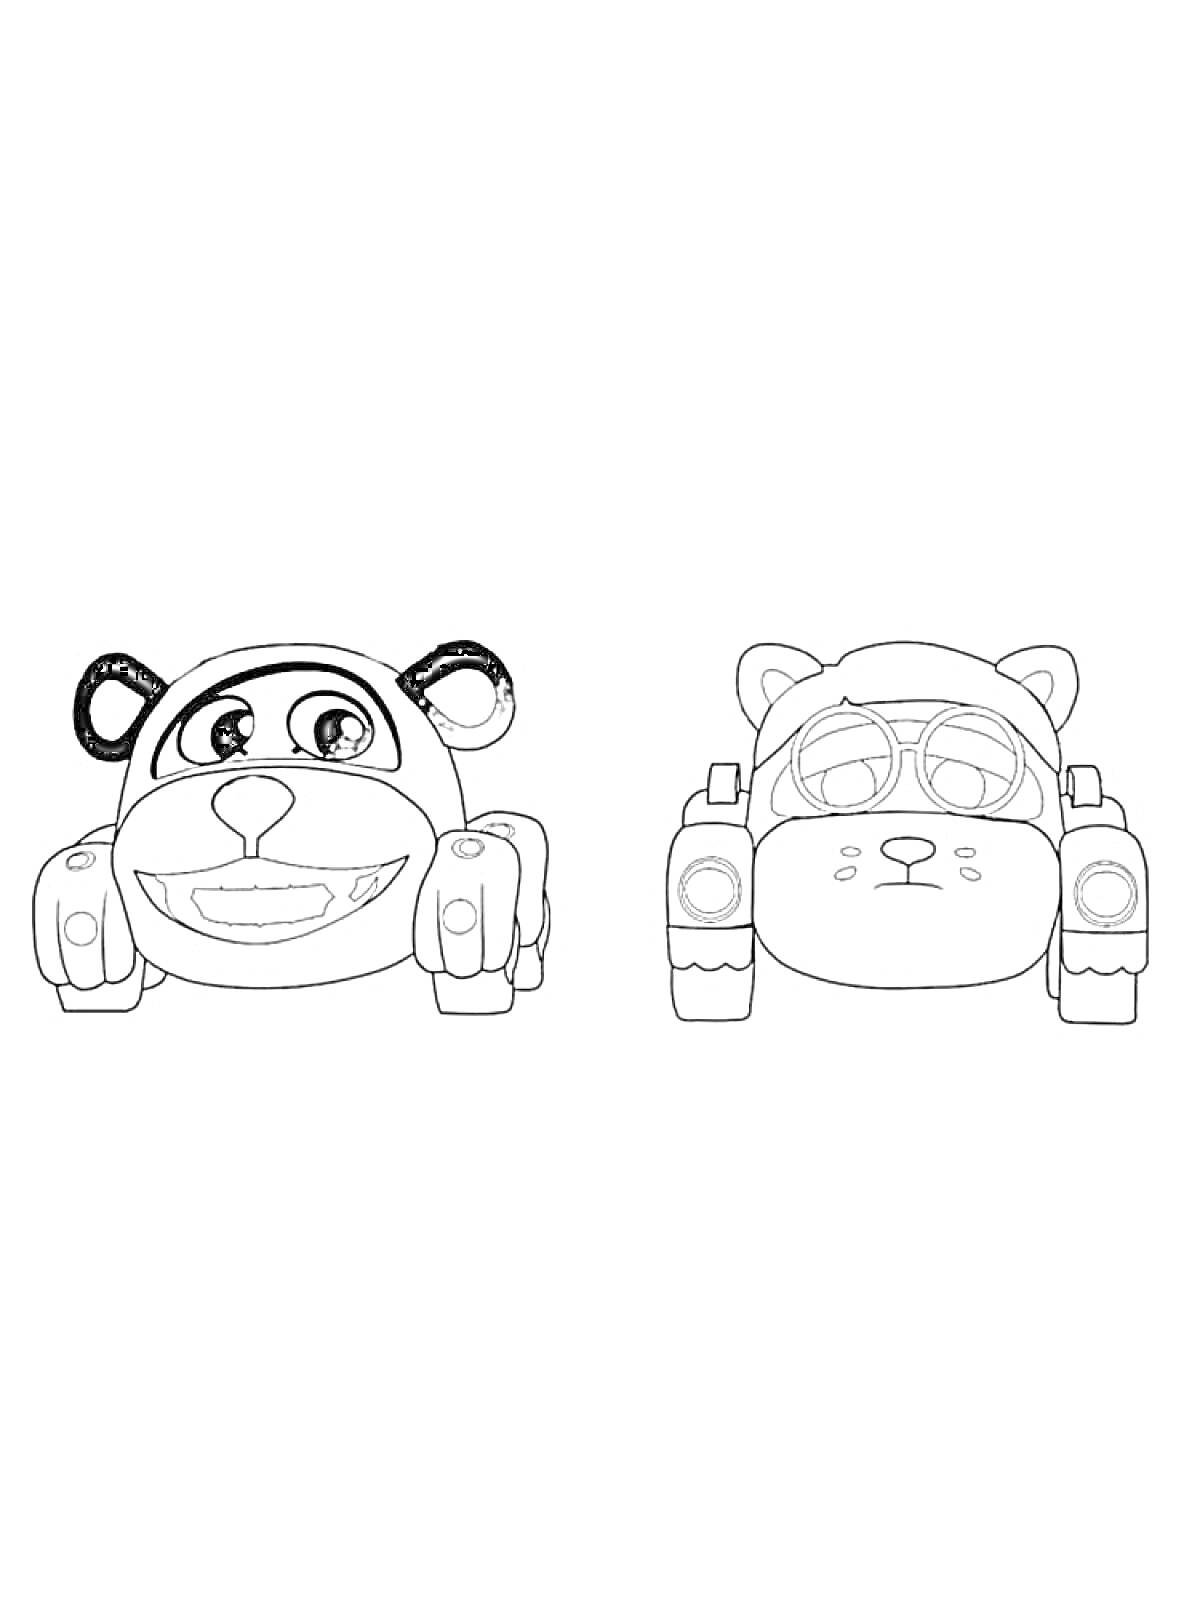 Раскраска Два автомобильных персонажа: обезьяна и кот